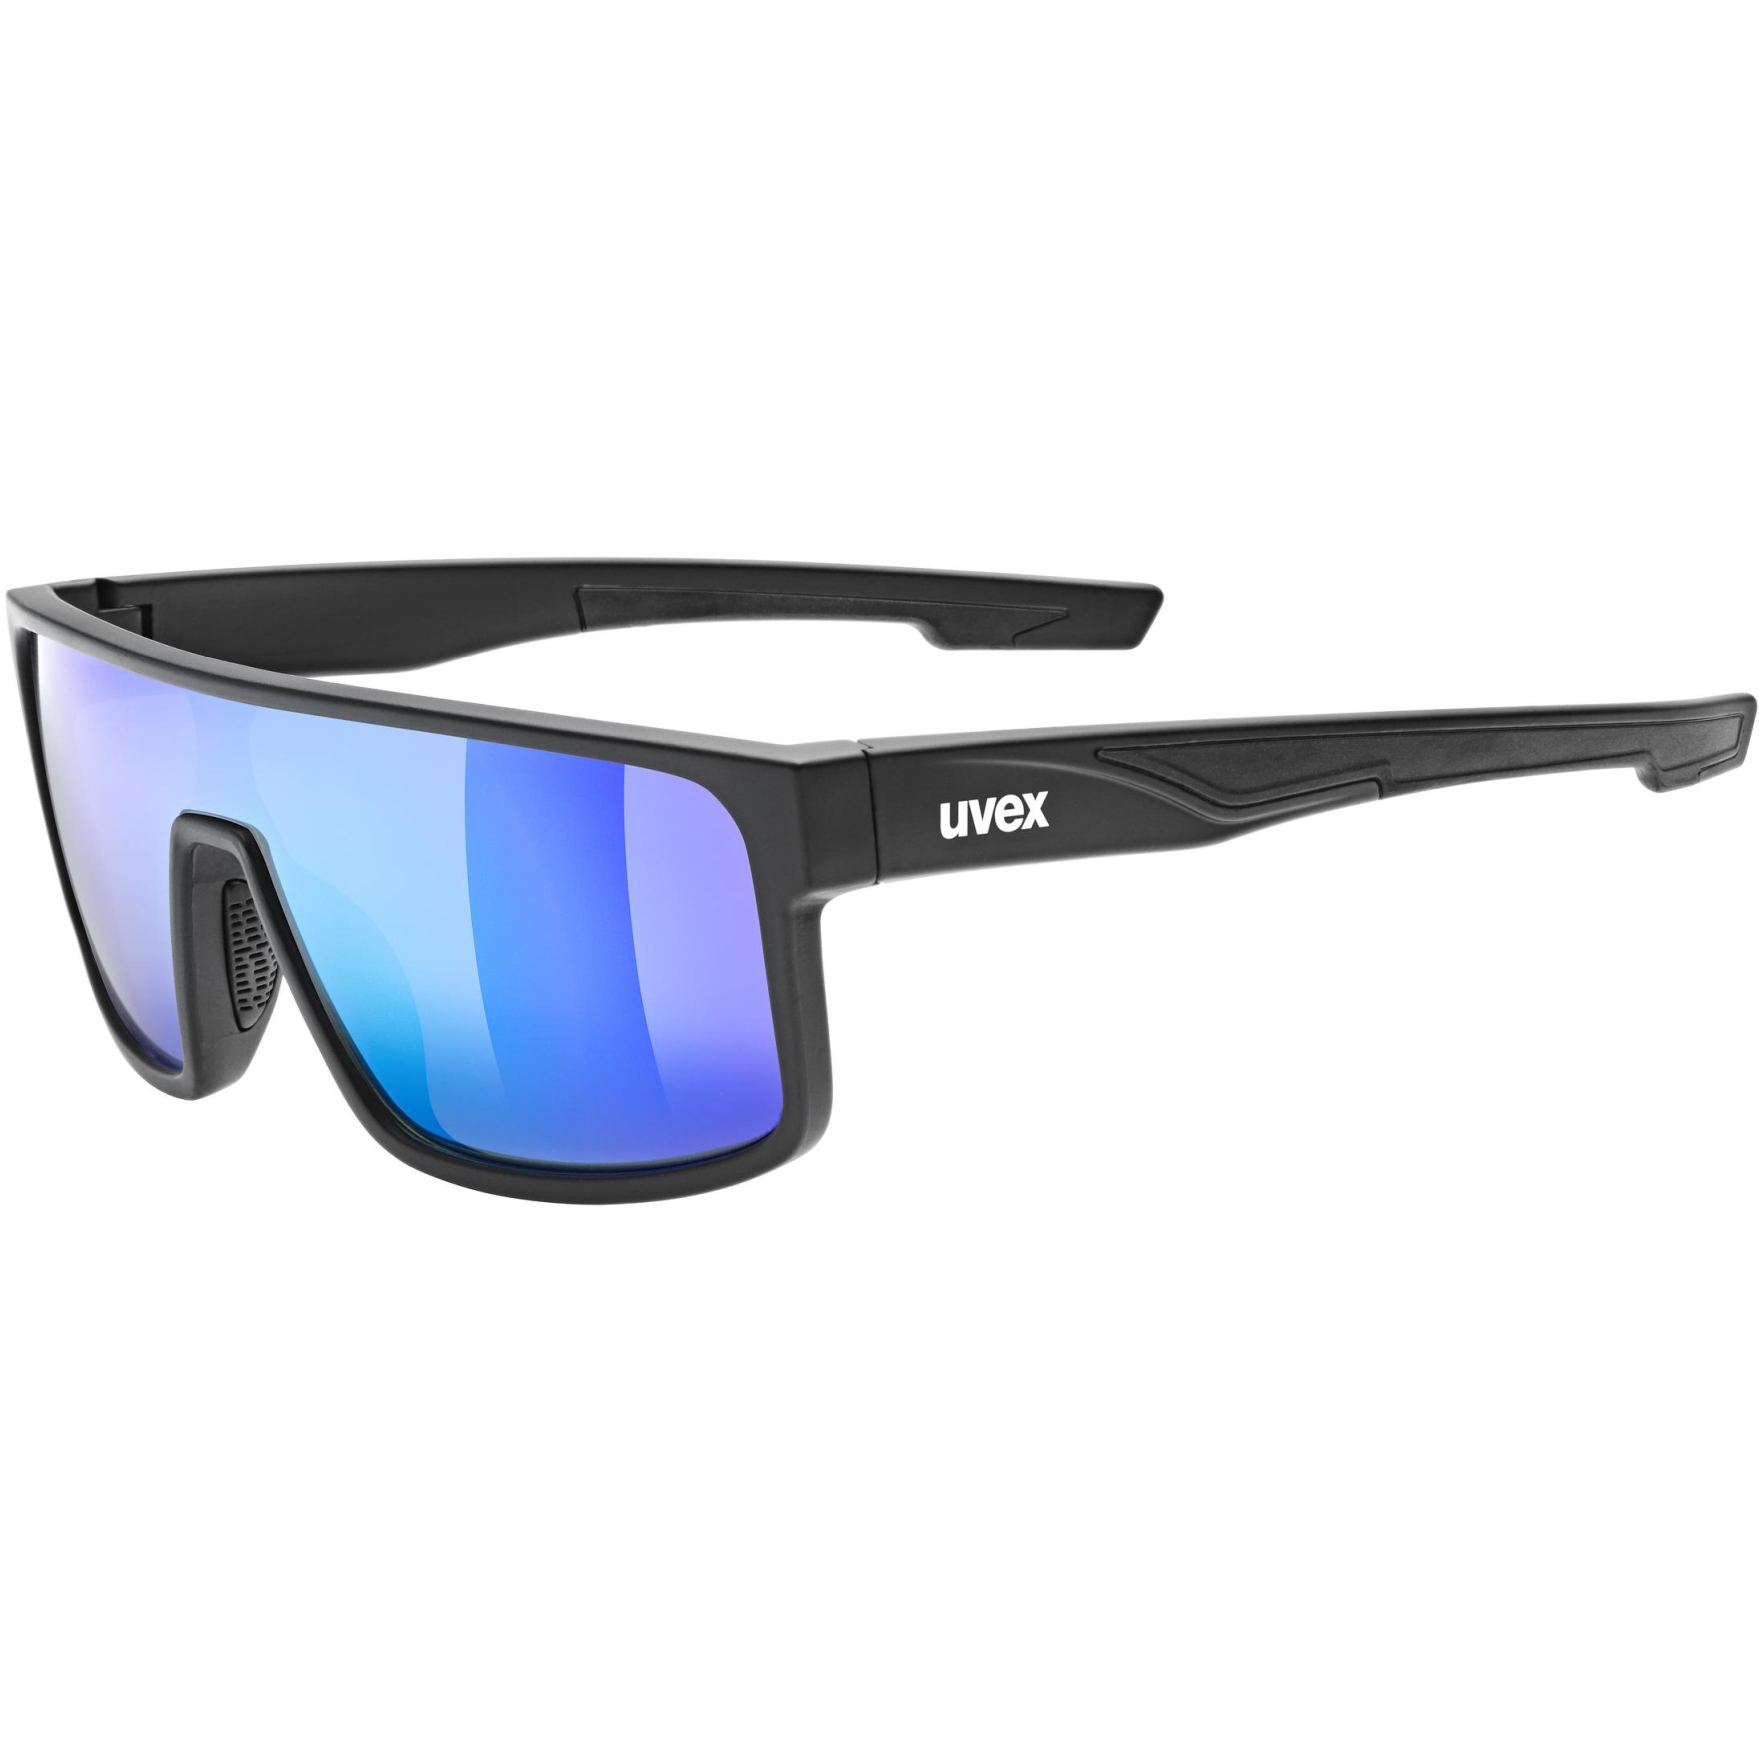 Produktbild von Uvex LGL 51 Brille - black matt/mirror green